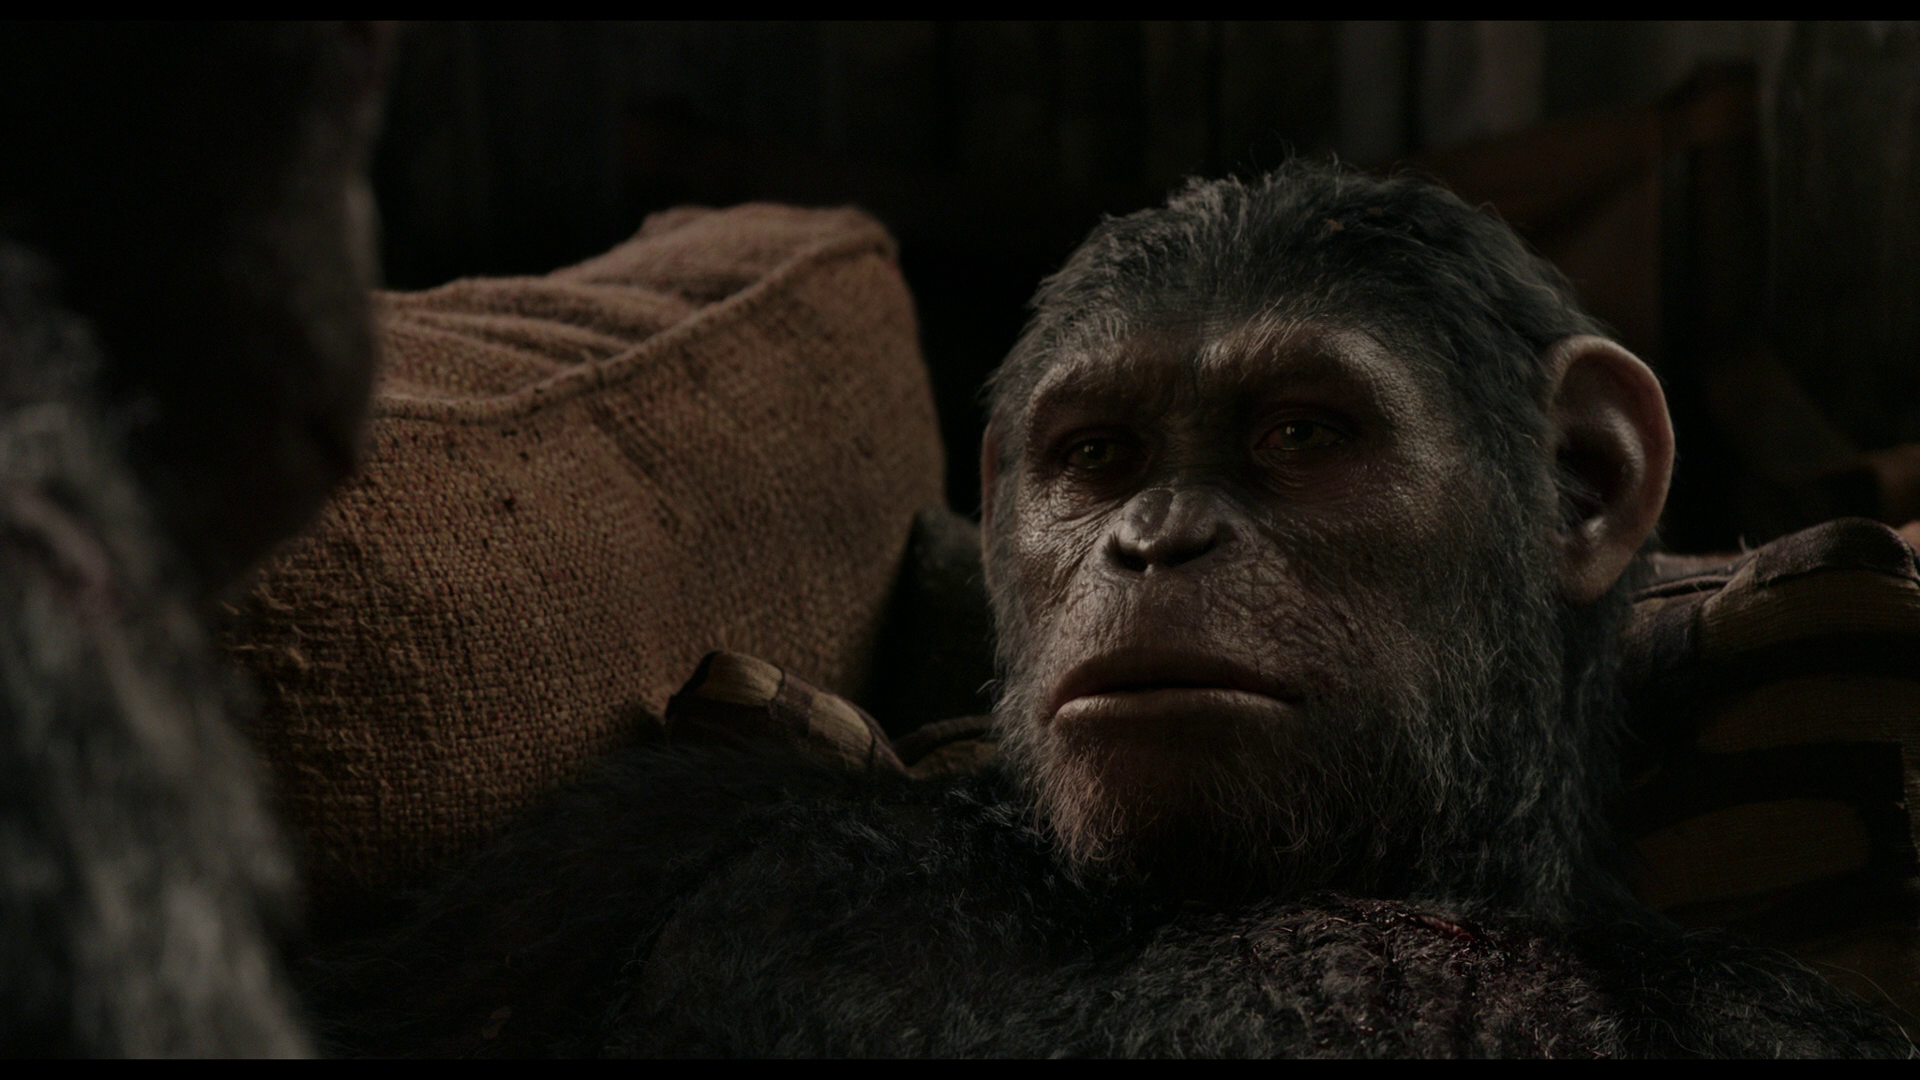 Планета обезьян революция качество 2014. Планета обезьян: революция (2014). Восстание планеты обезьян 2.